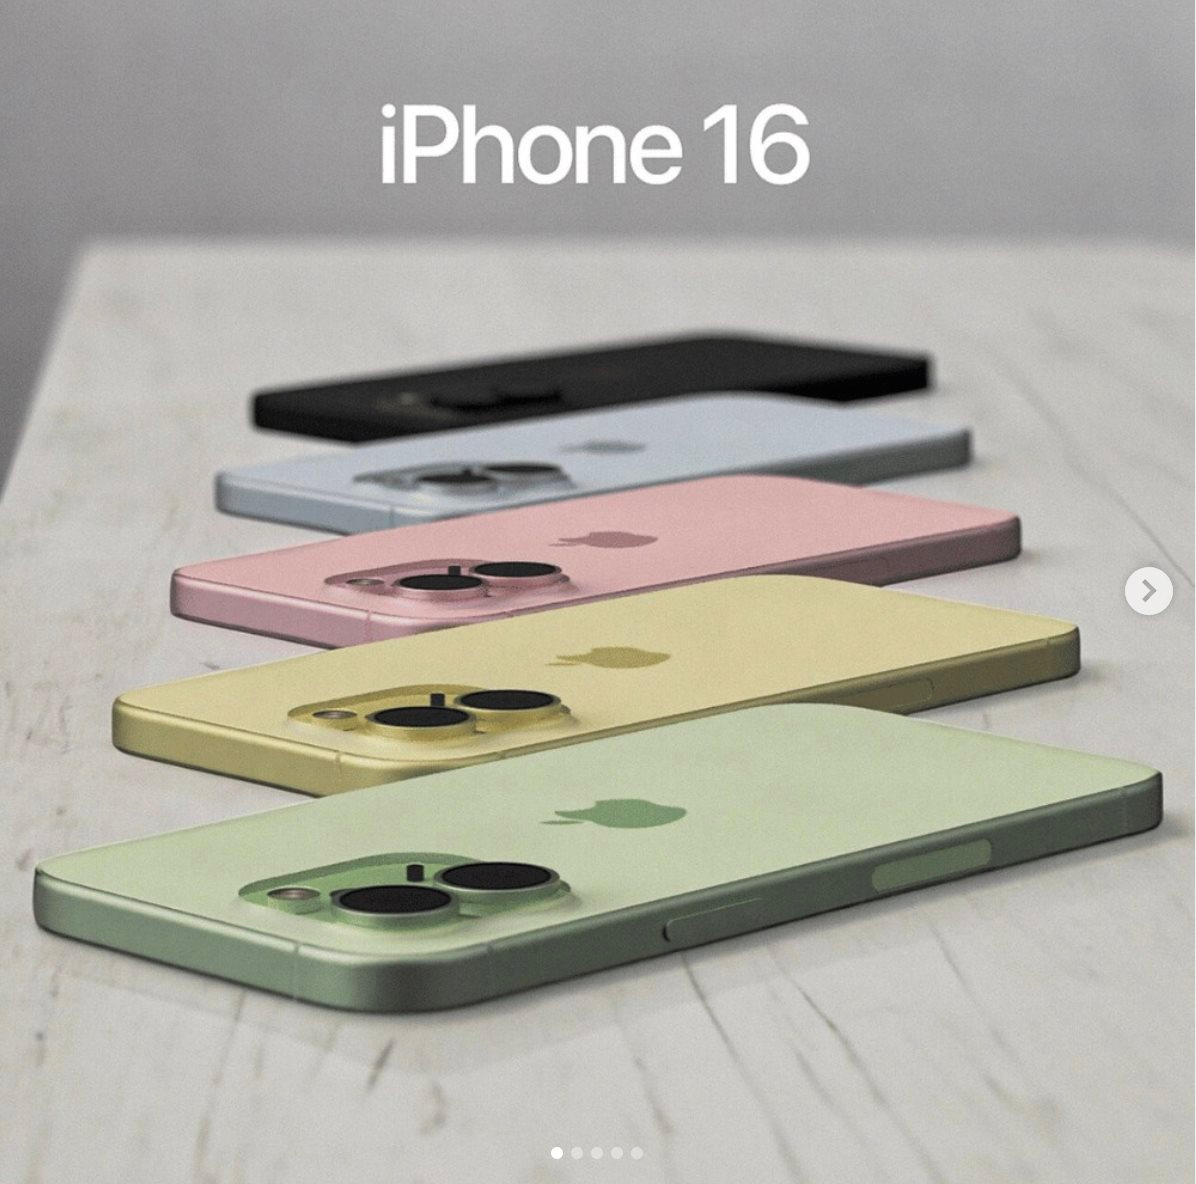 iPhone 16 màu tím đẹp lịm tim, thiết kế cụm camera mới!- Ảnh 4.